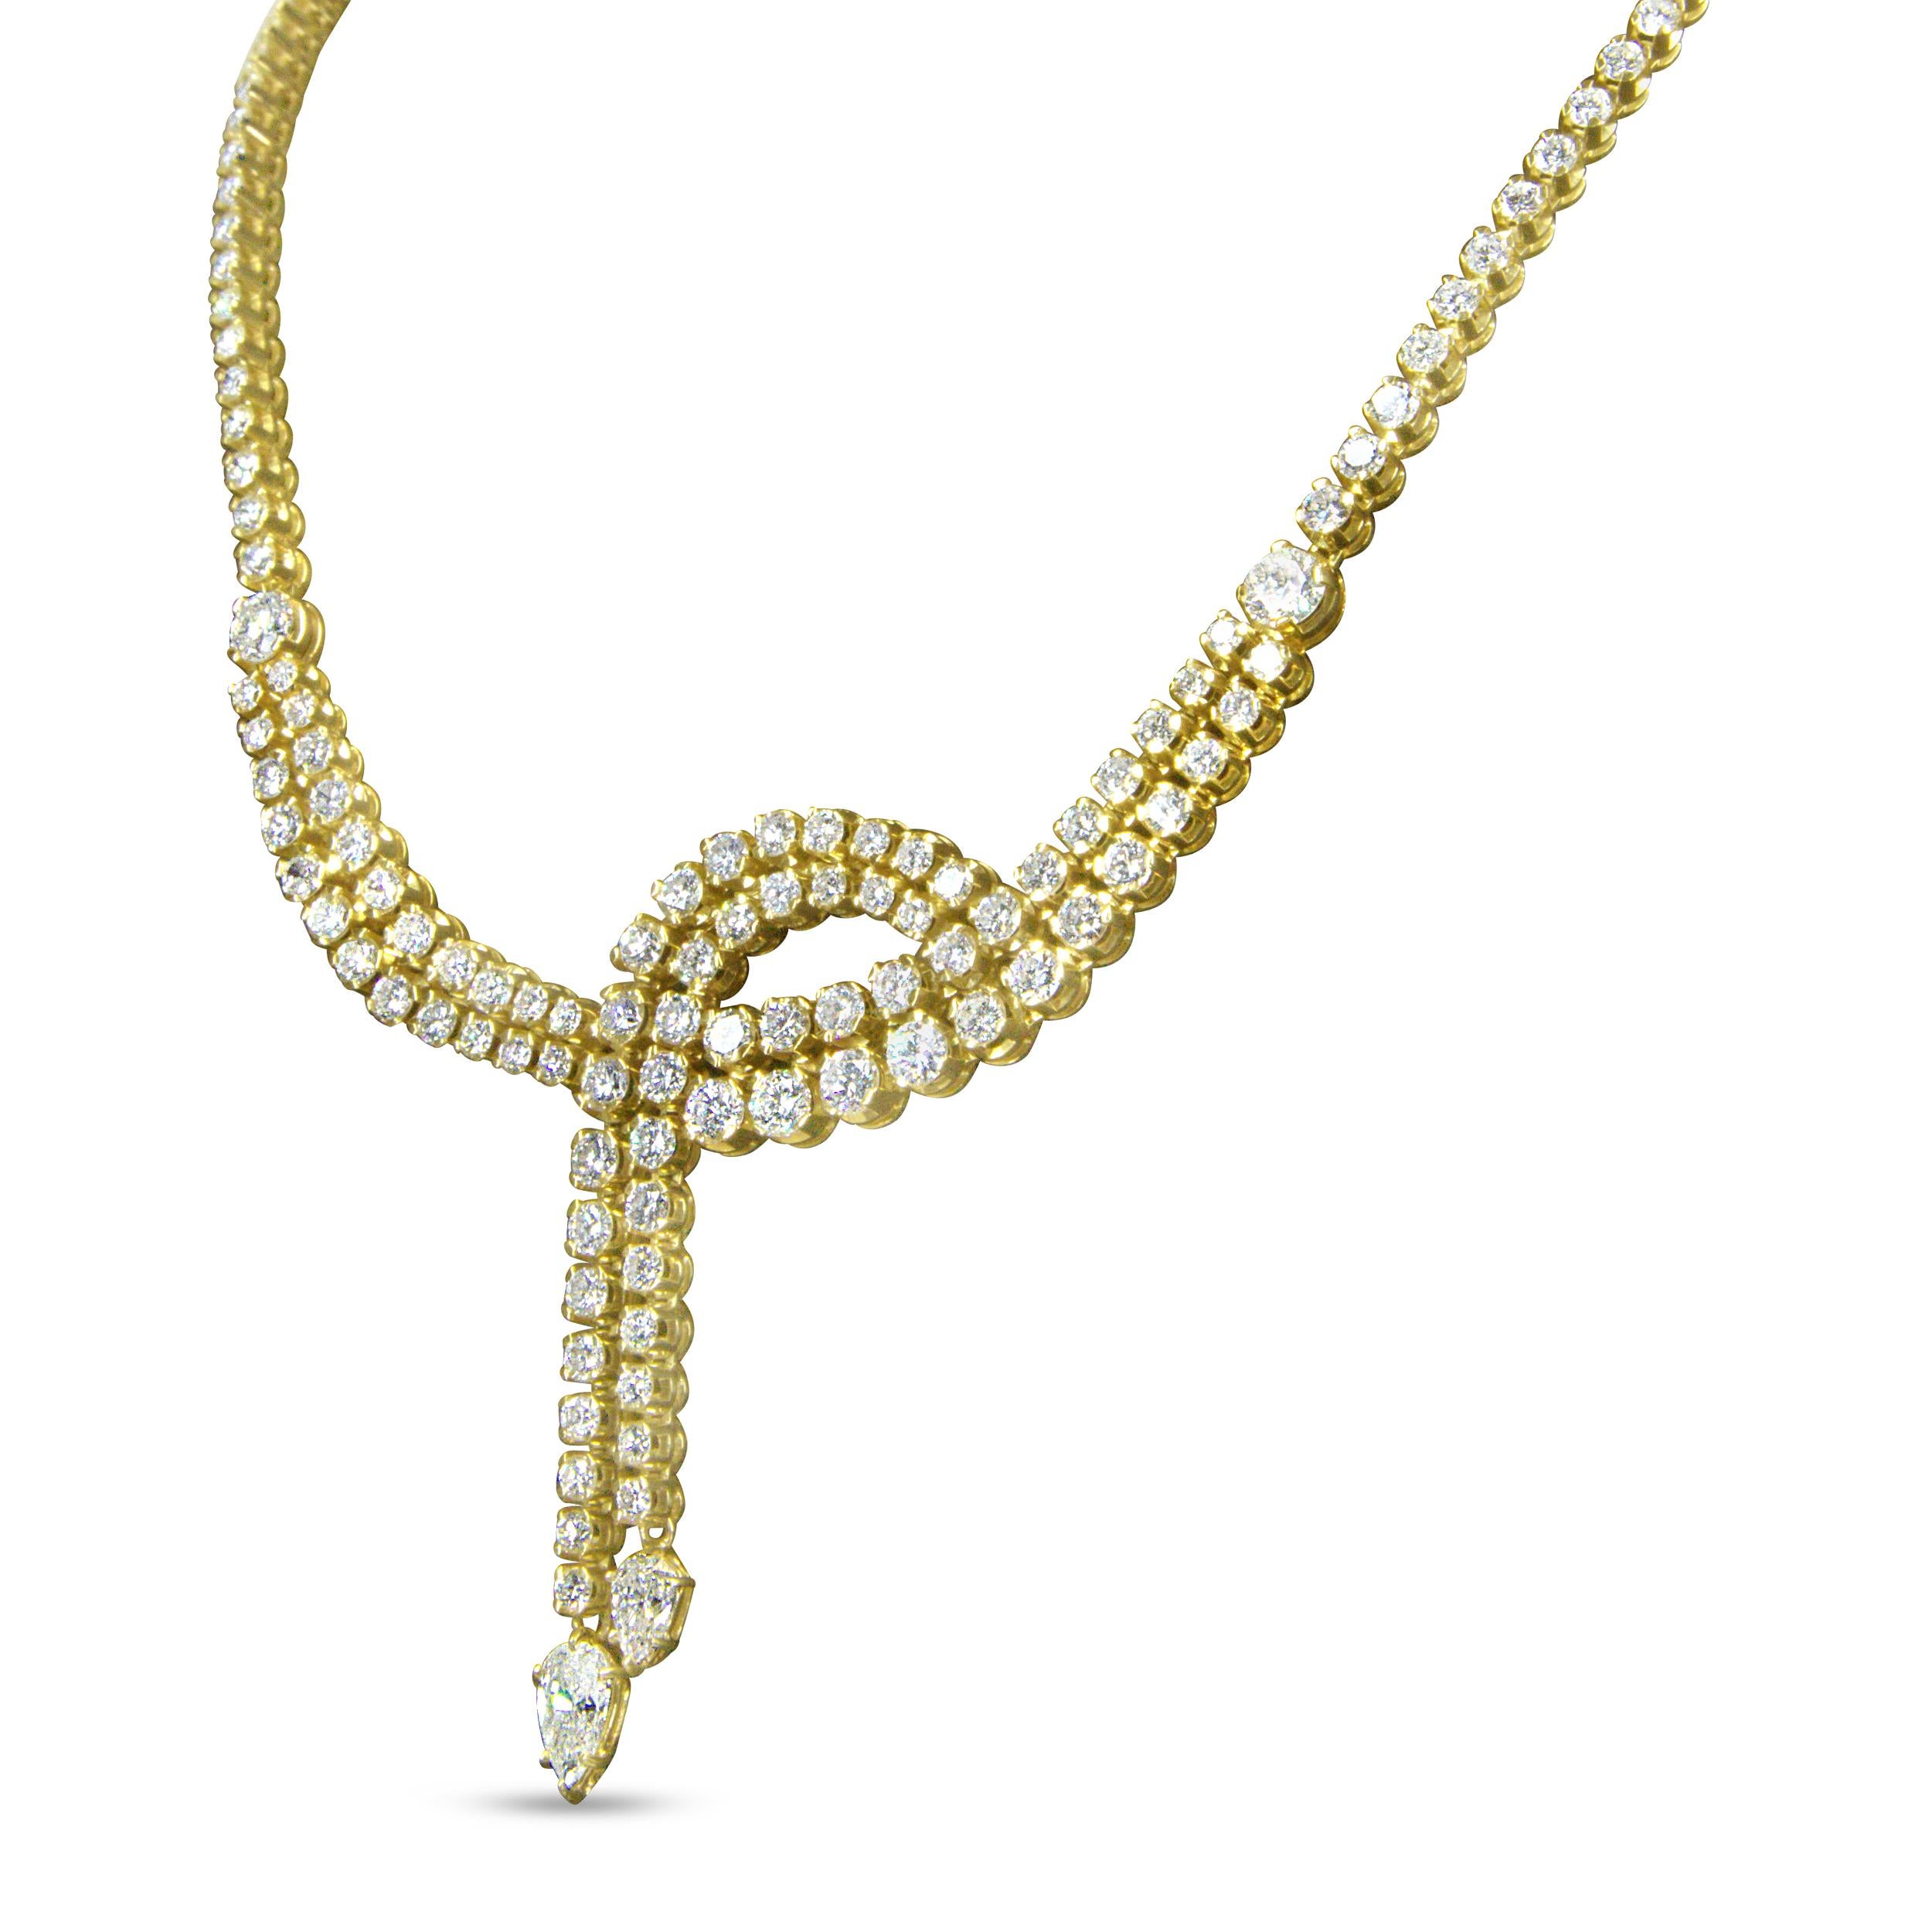 Ornez votre décolleté de vos rayons de diamants naturels luxueux en rangées rayonnantes ! Ce collier tennis lariat est un design absolument évocateur, durablement élégant et doté d'un éclat brillant avec plus de 200 diamants qui scintillent et